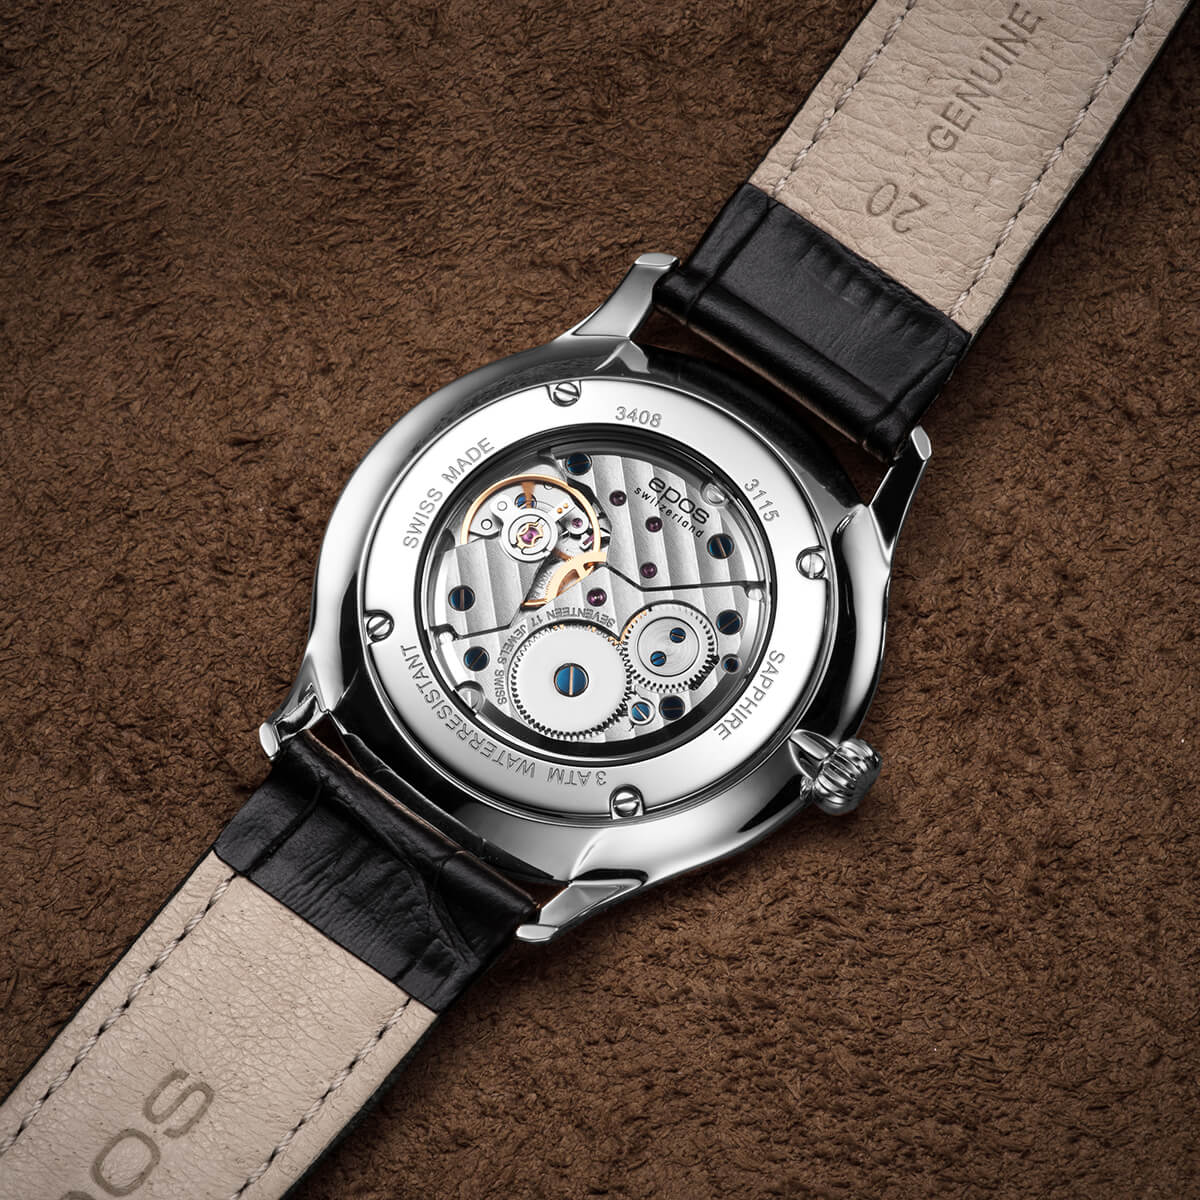 Timeless EPOS 3408 Epos - Watches